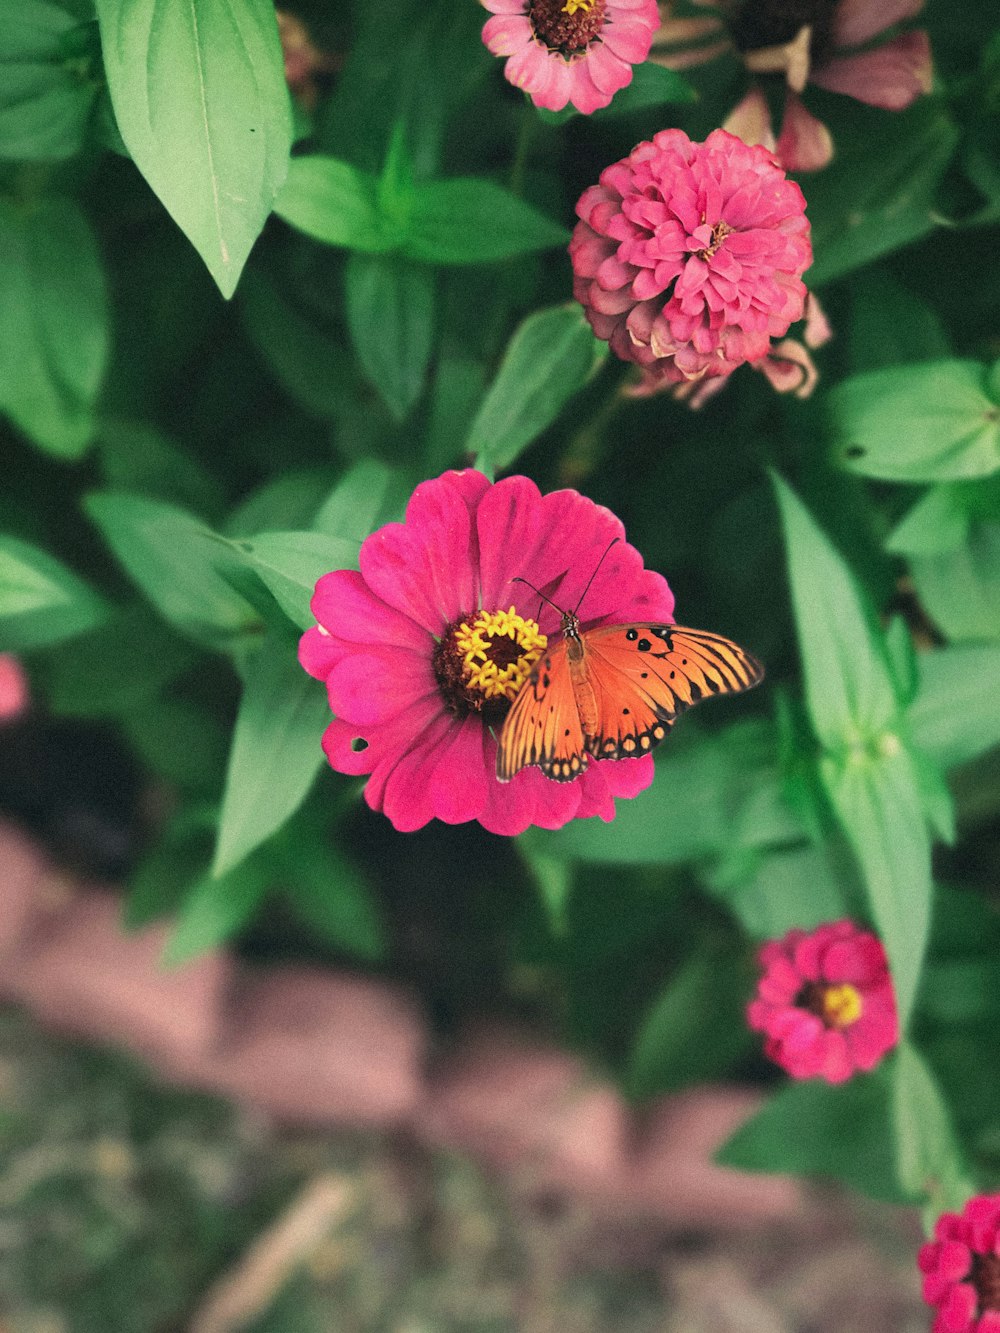 Flachfokusfotografie eines orangefarbenen Schmetterlings in rosa Blume